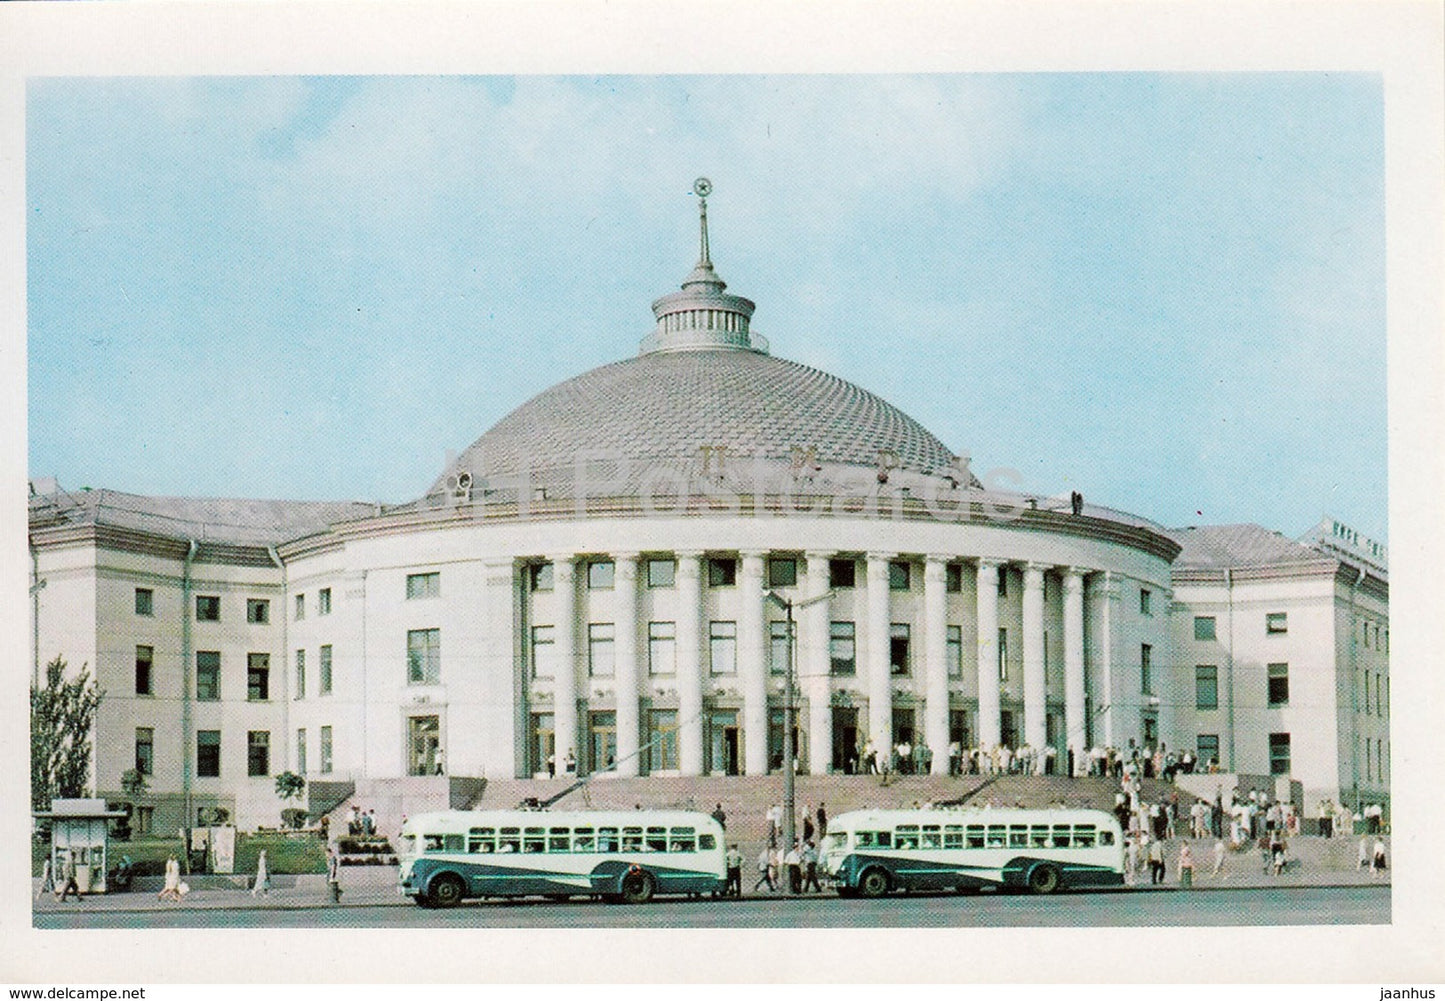 Kyiv - Kiev - The Circus - trolleybus - Ukraine USSR - unused - JH Postcards